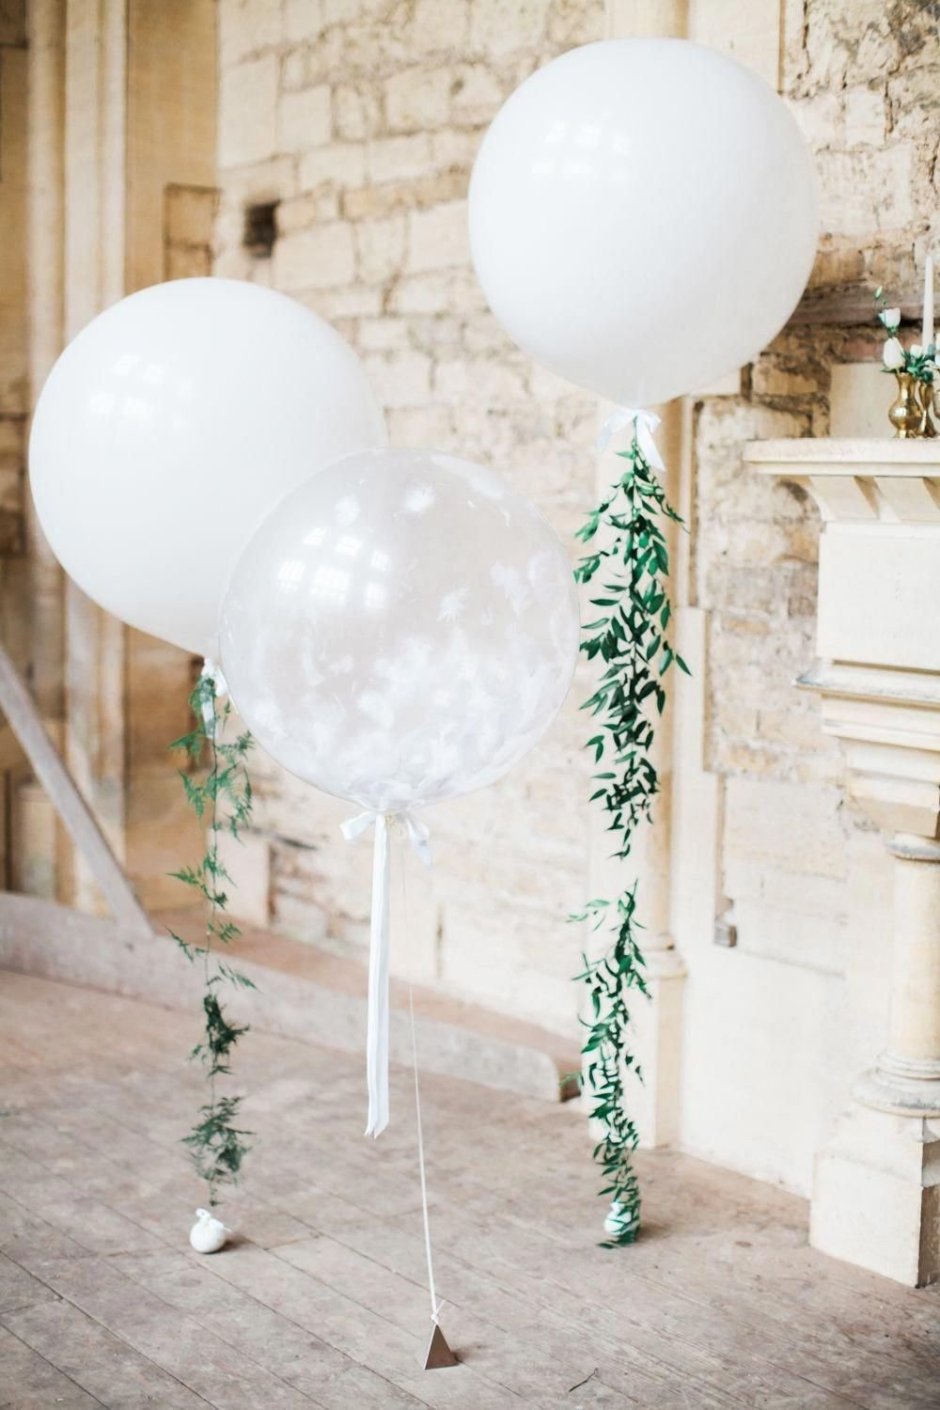 Фотозона из шаров на свадьбу